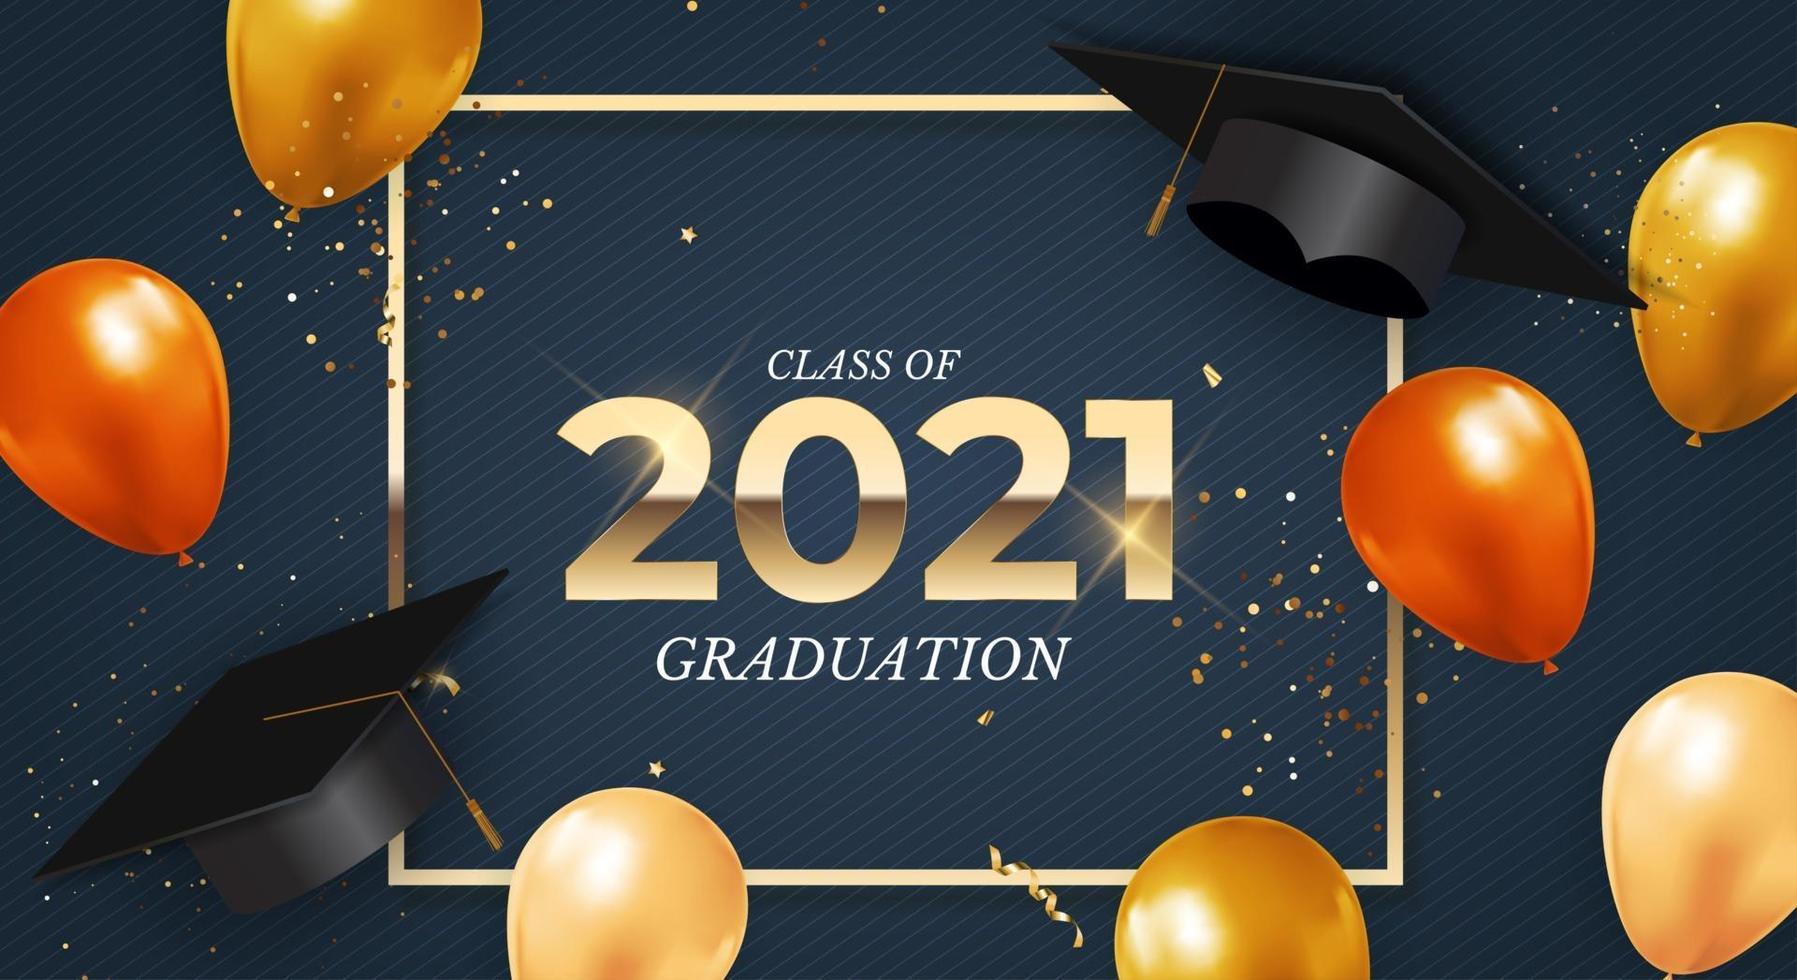 turma de formatura de 2021 com chapéu de formatura, confete e fita dourada vetor